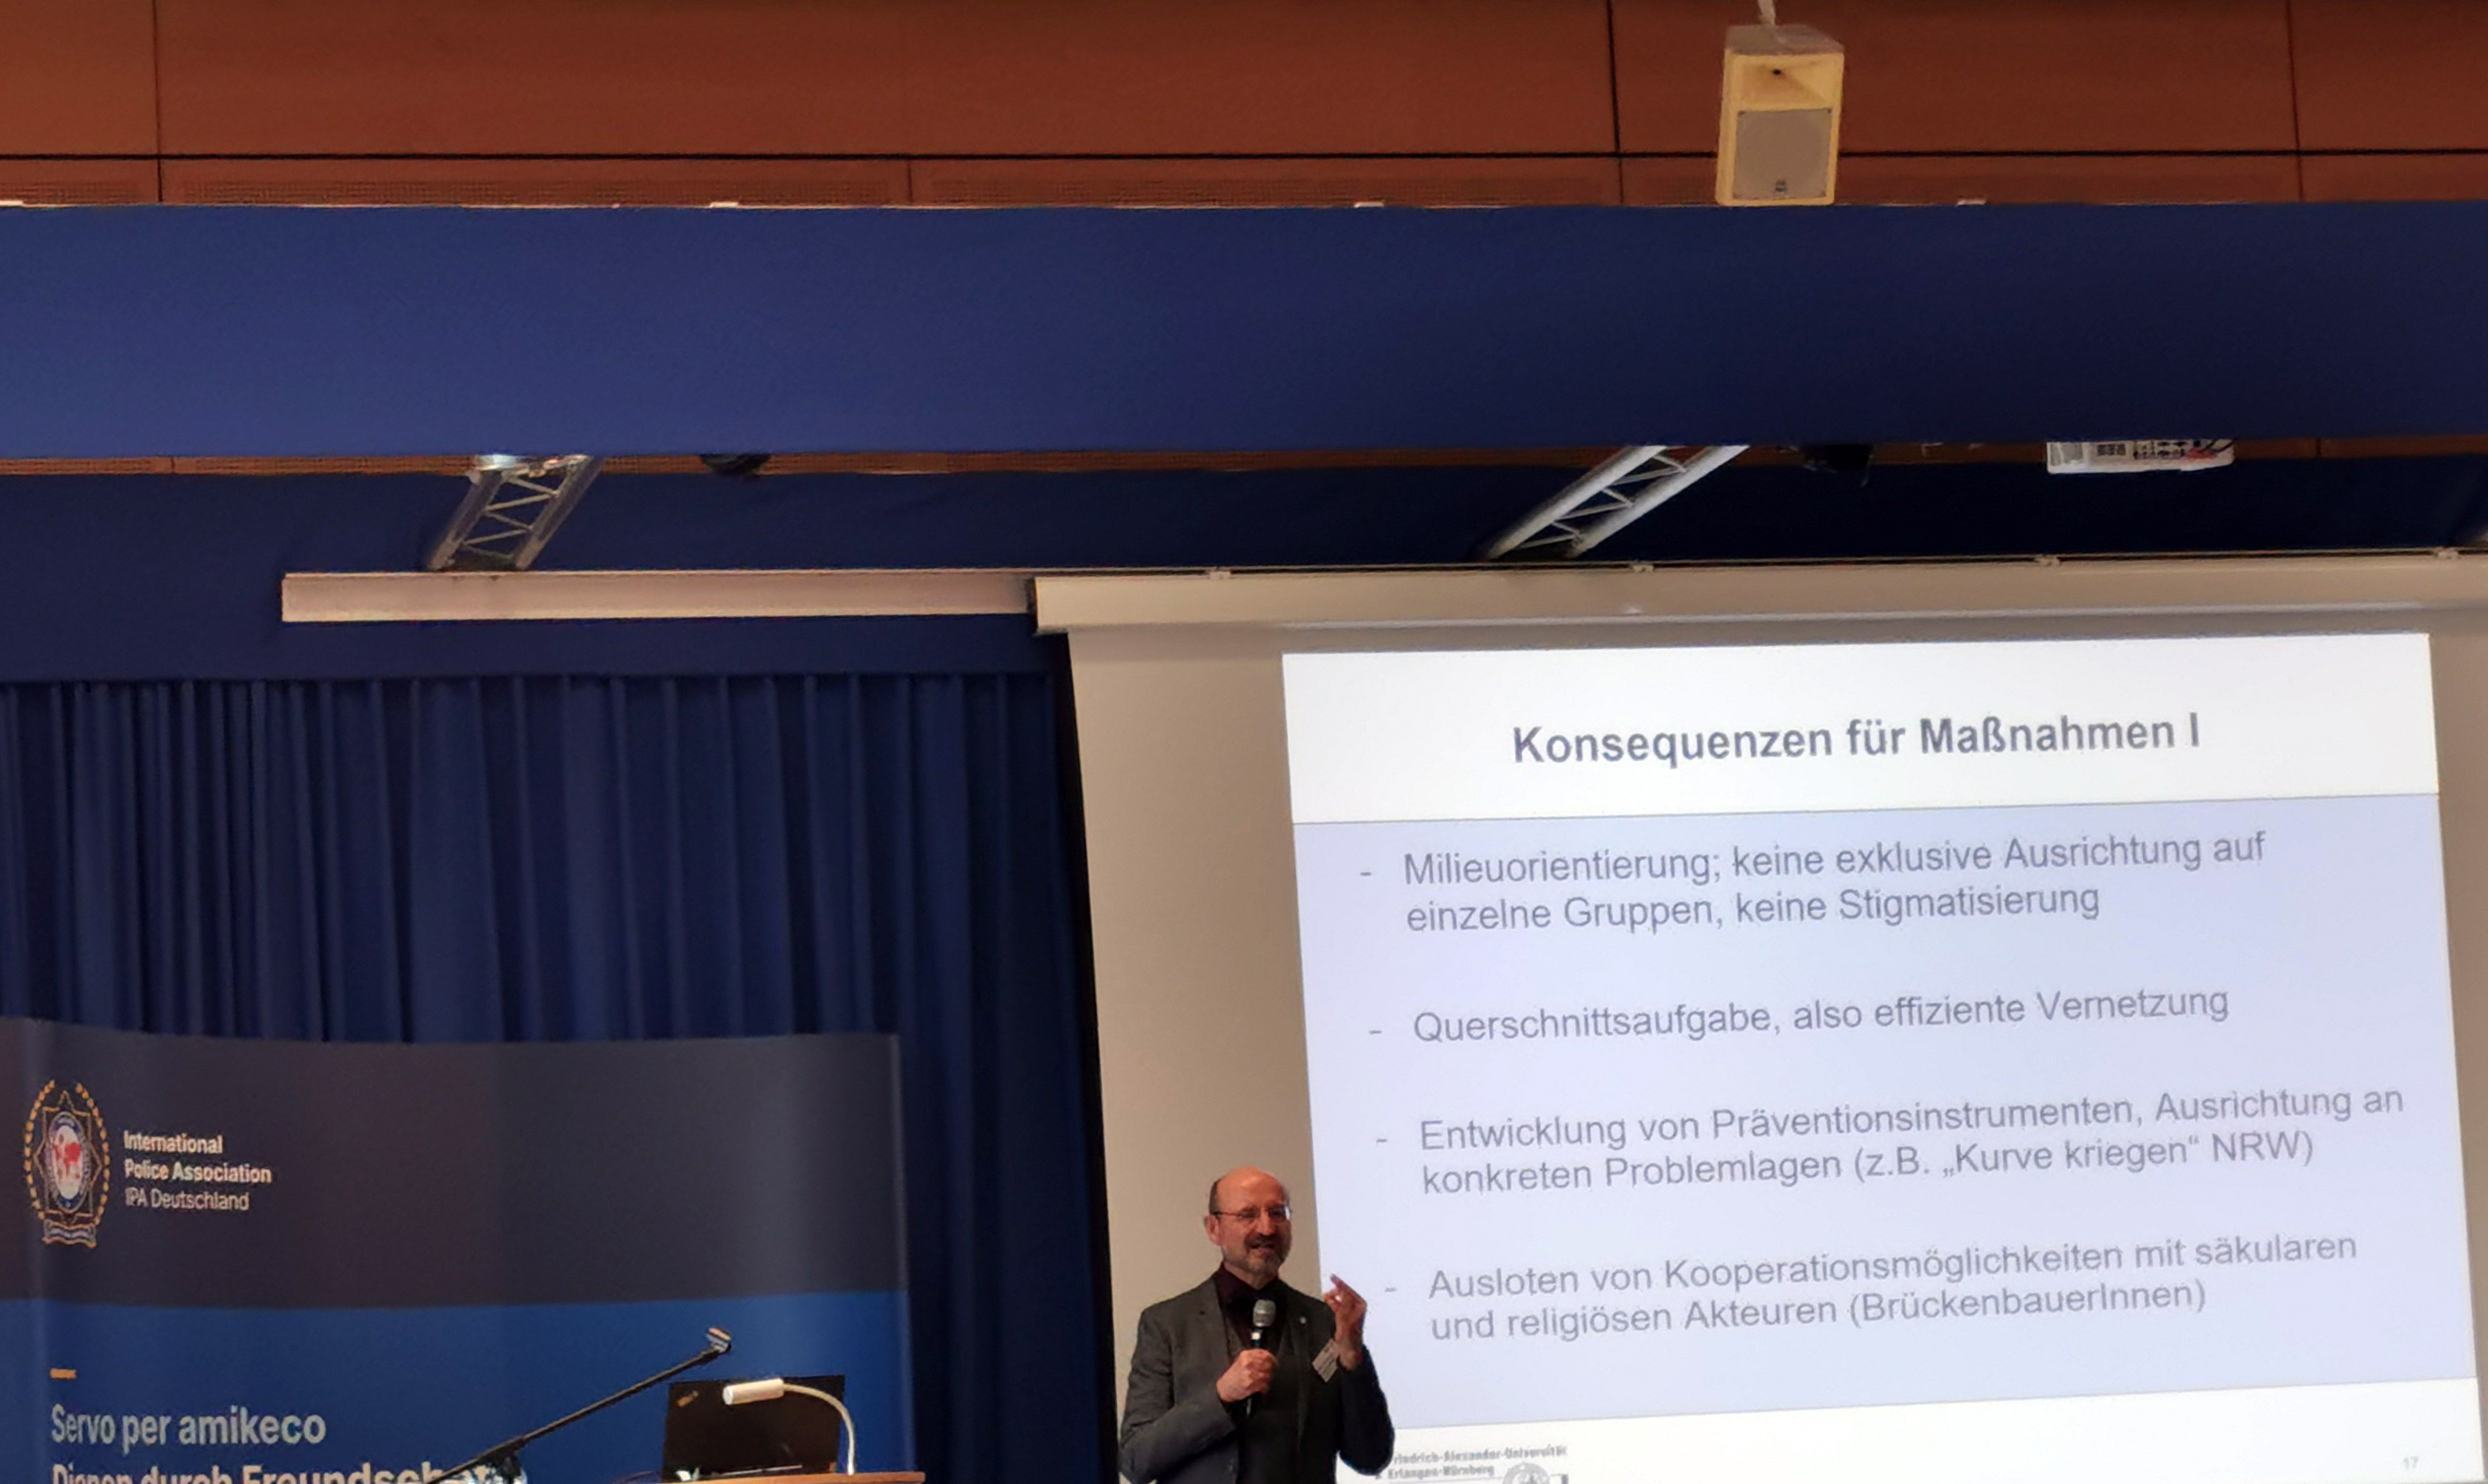 Herr Prof. Dr. Mathias Rohe hält einen Vortrag vor einer Leinwand